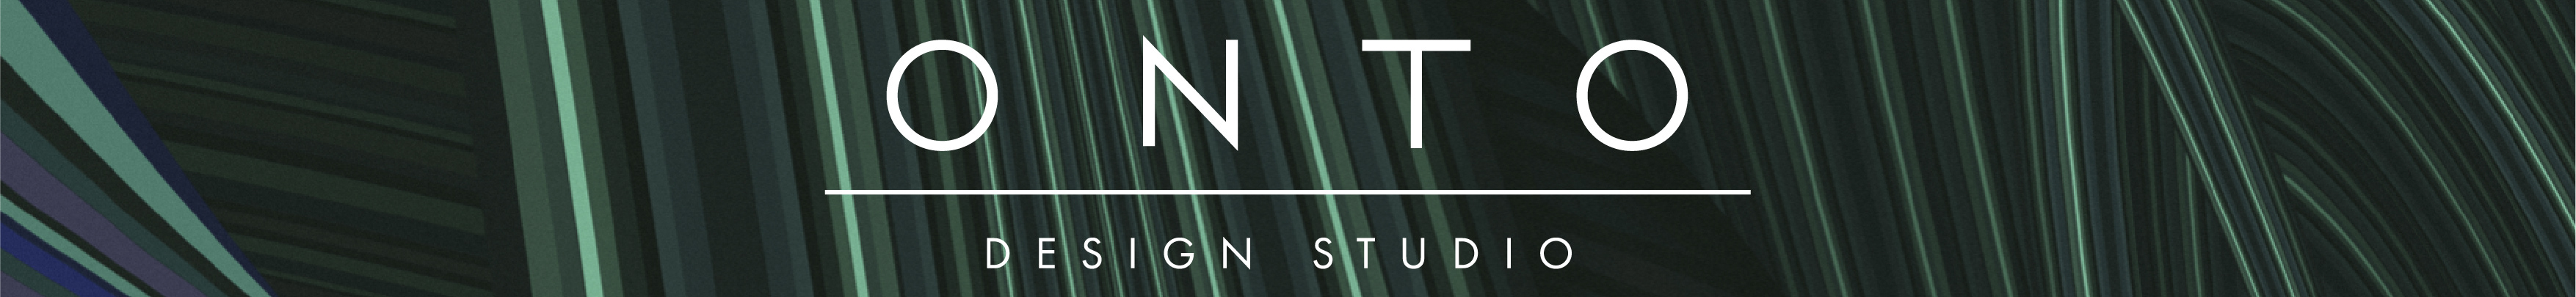 ONTO Design Studio's profile banner